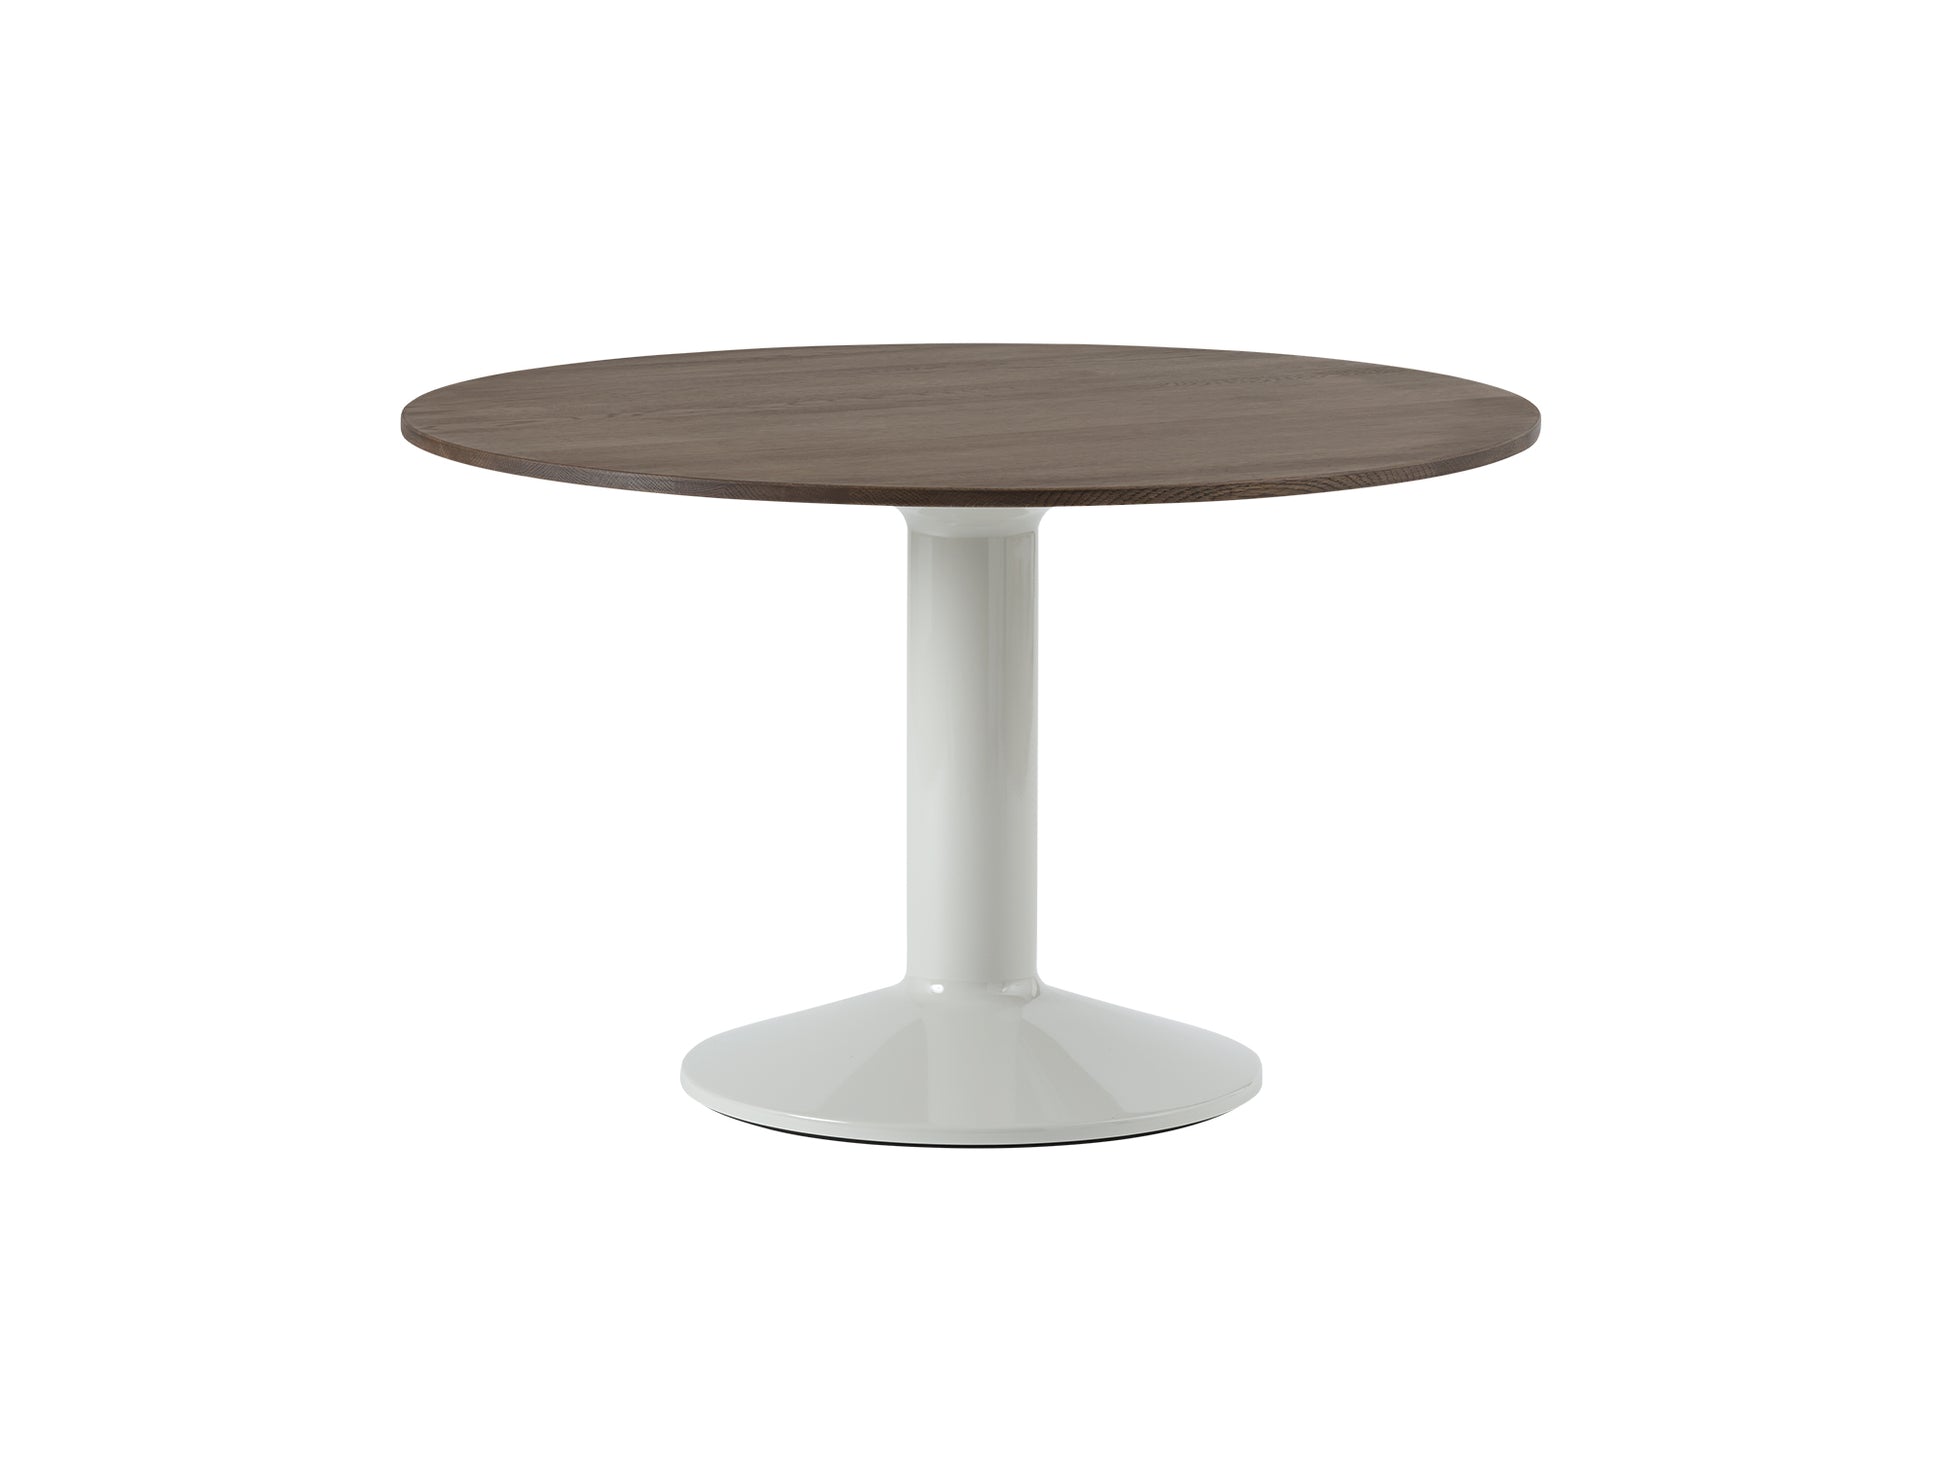 Midst Table by Muuto - Diameter: 120 cm / Dark Oiled Oak Tabletop with Grey Steel Base